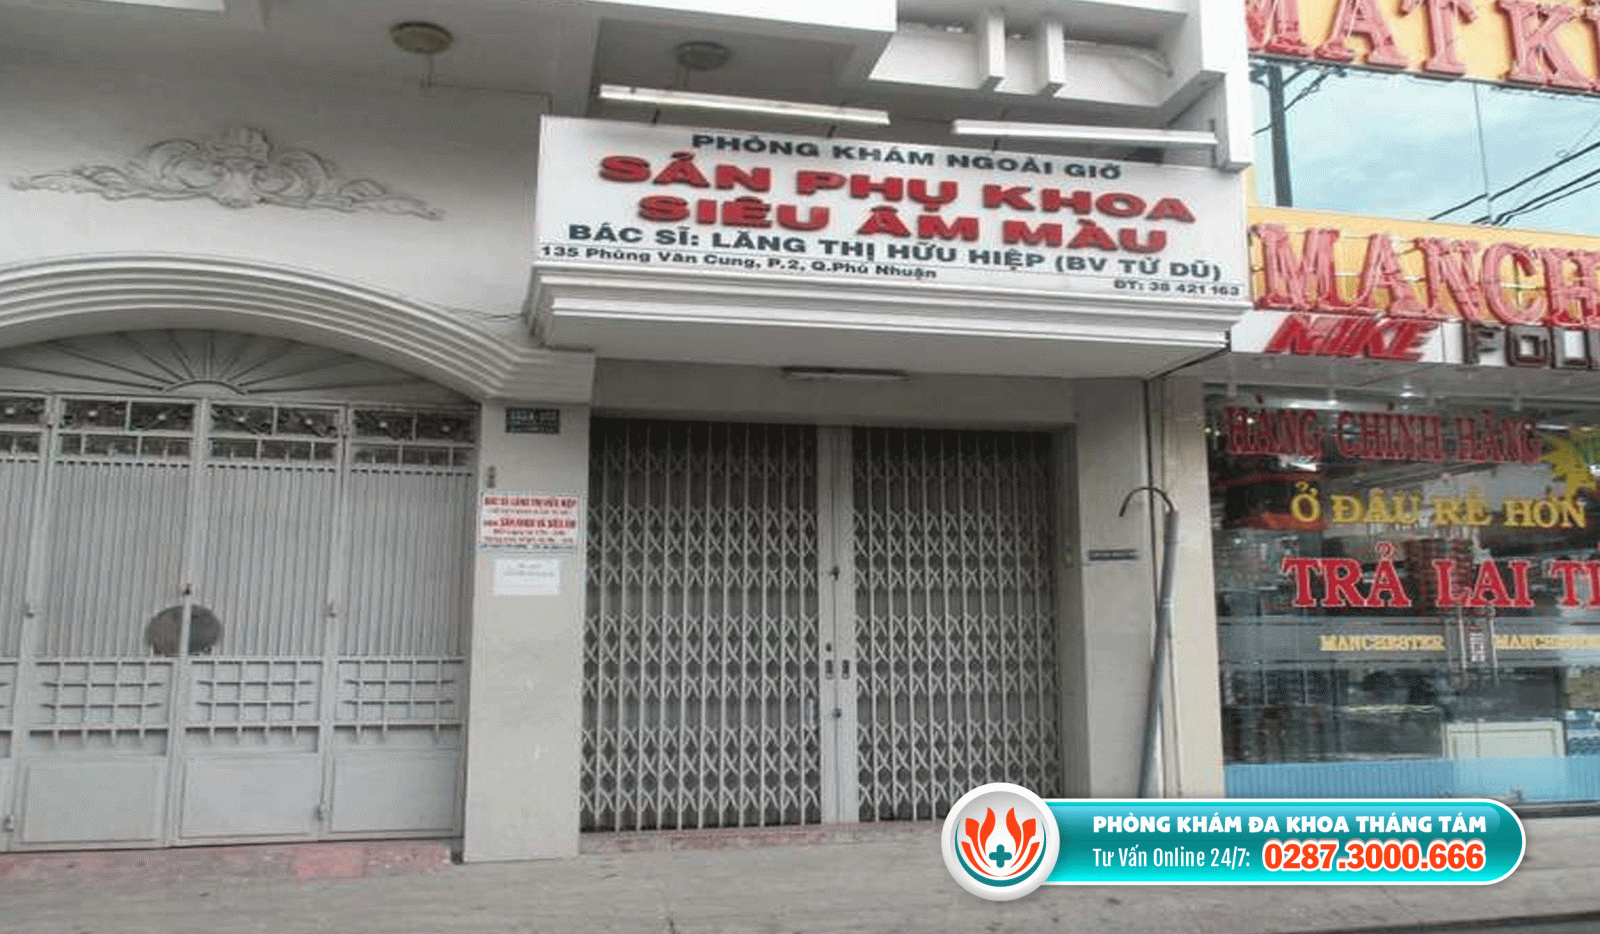 Địa chỉ mua thuốc phá thai quận Phú Nhuận - Phòng khám Sản phụ khoa BS. Lăng Thị Hữu Hiệp